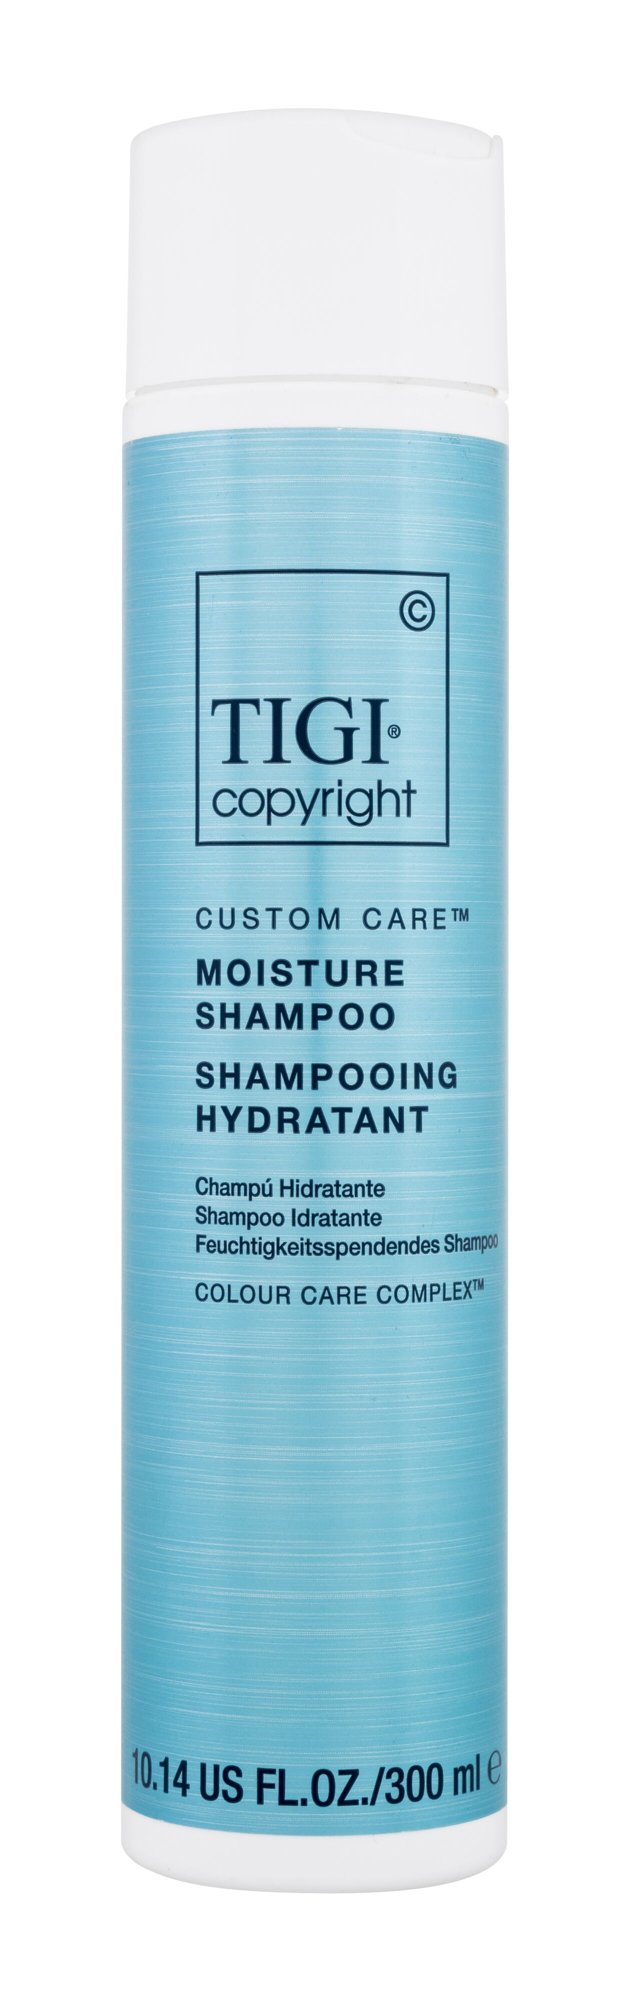 Tigi Copyright Custom Care Moisture Shampoo 300ml šampūnas